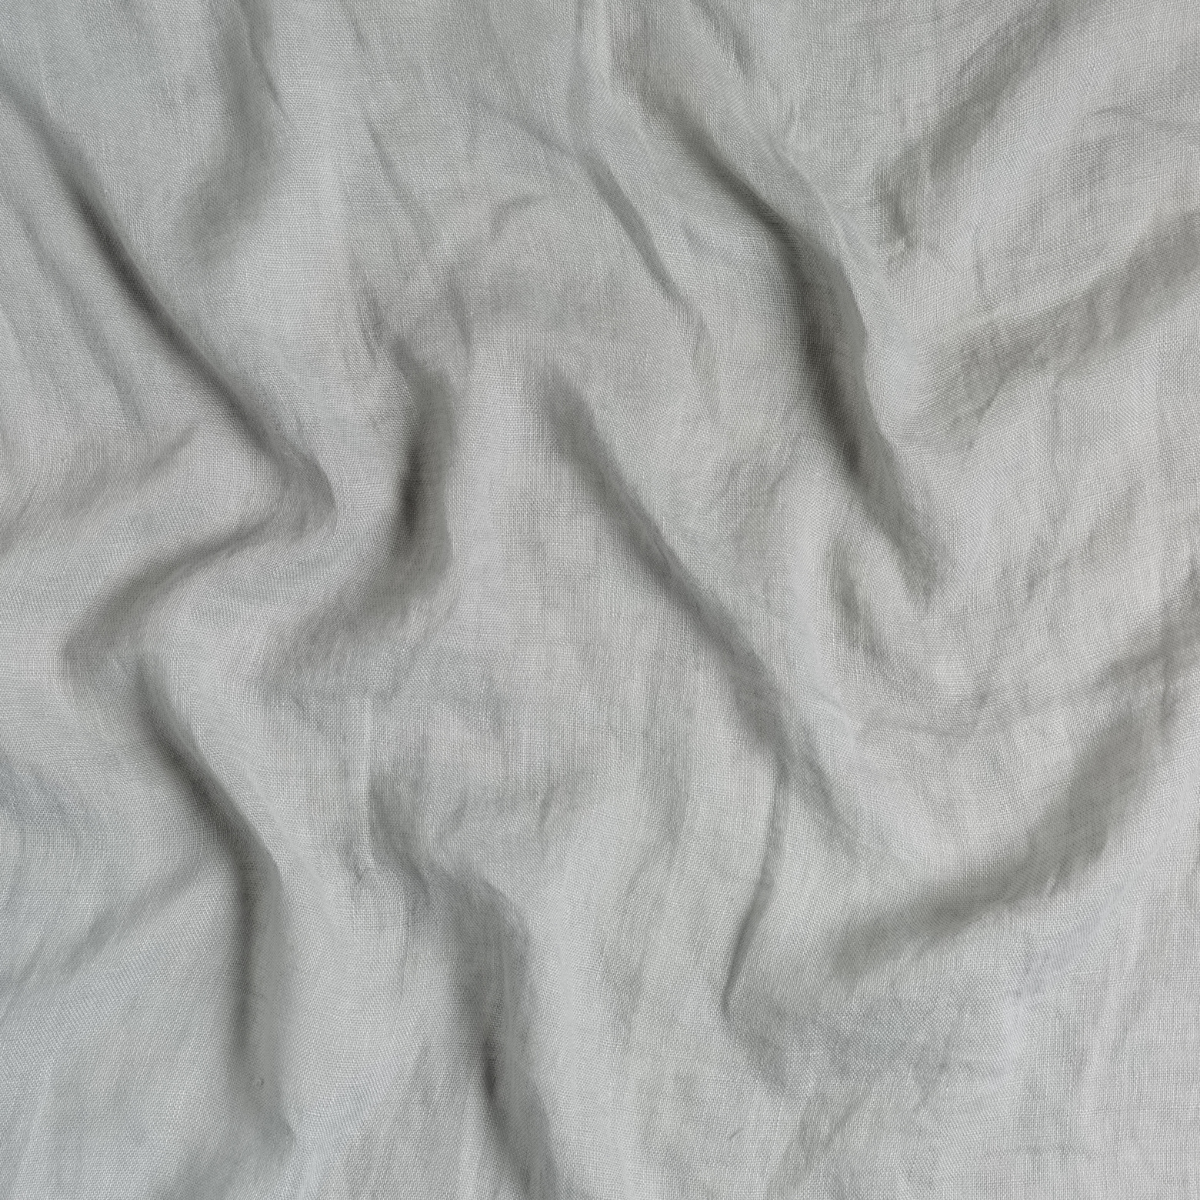 Linen Whisper Bed Skirt